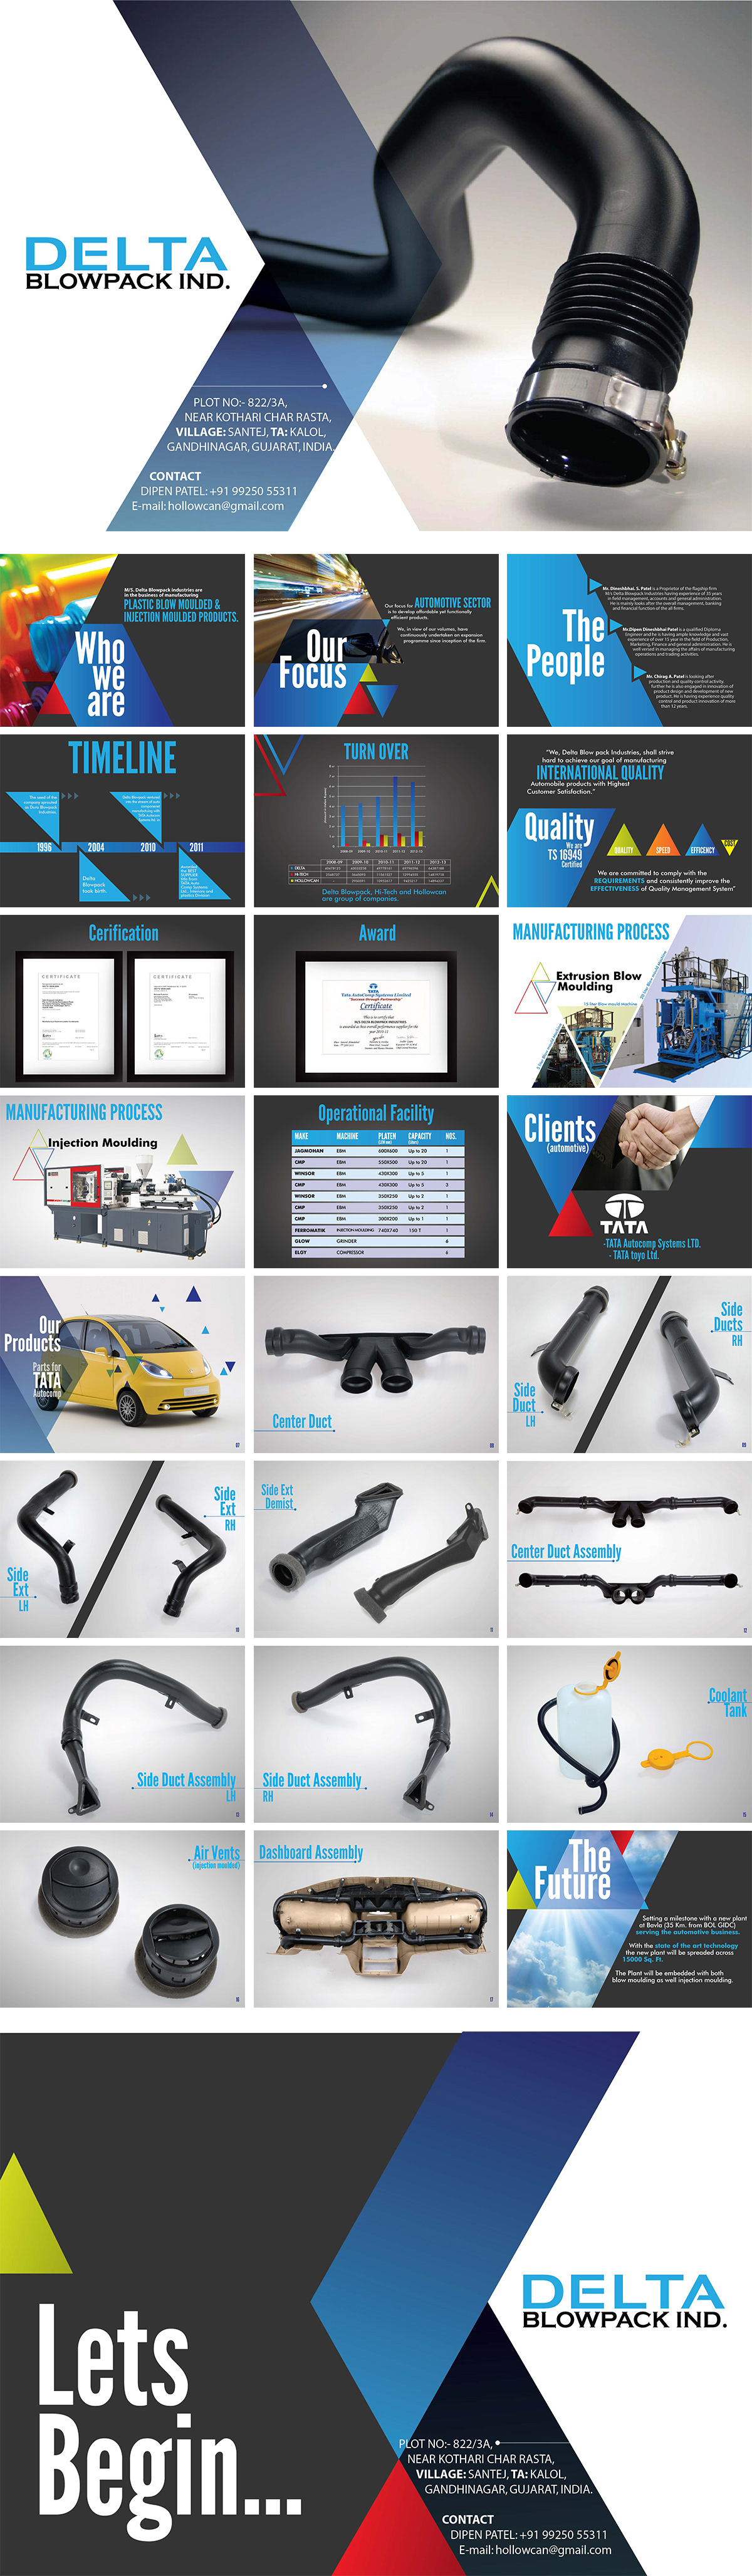 Delta moulding Blowpack India tata nano Tata Nano presentation Corporate Profile profile portfolio pitch plastic blow target